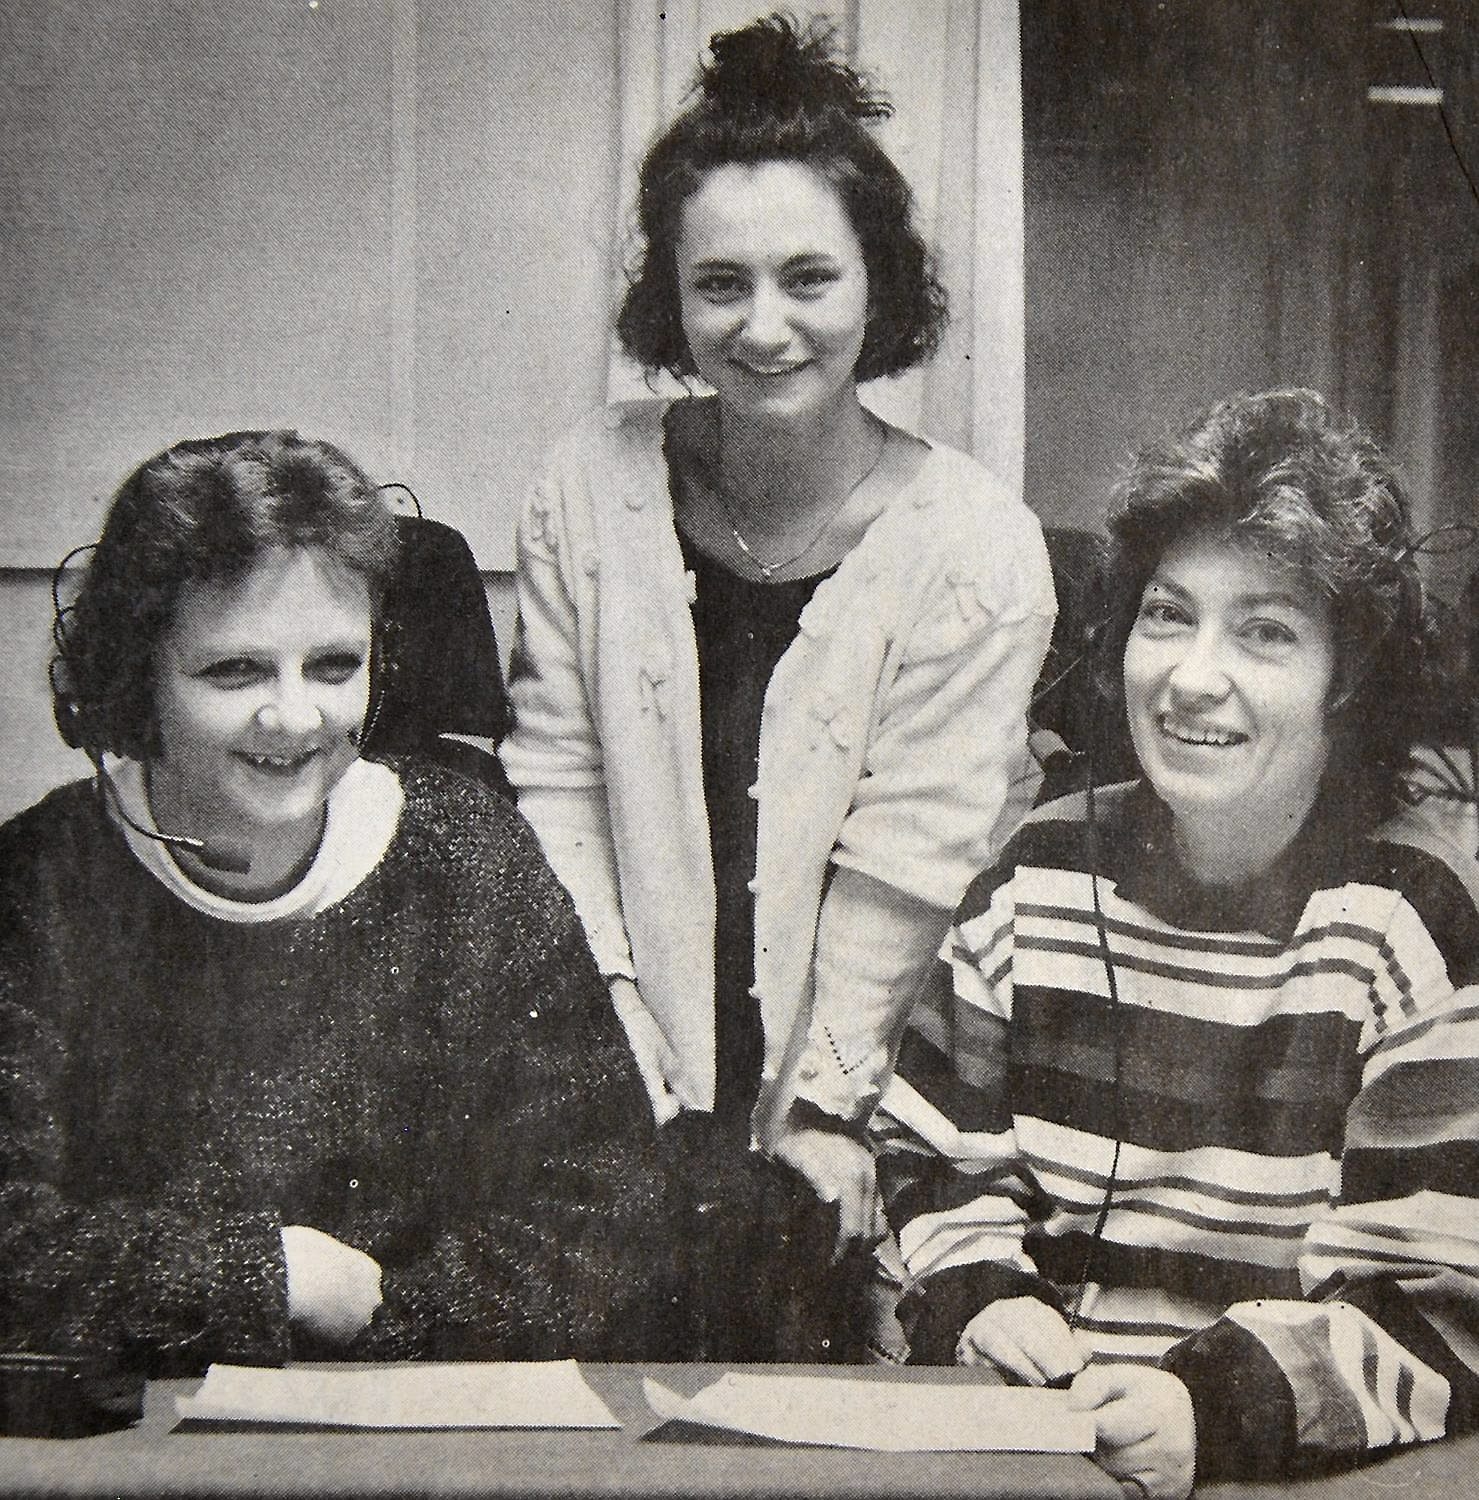 Här är tre av de fyra tjejerna bakom Norra Skånes taltidning: Anita Nordström, Ann Branting och Ulla-Britt Almström.
Arkiv: Helene Nordgren